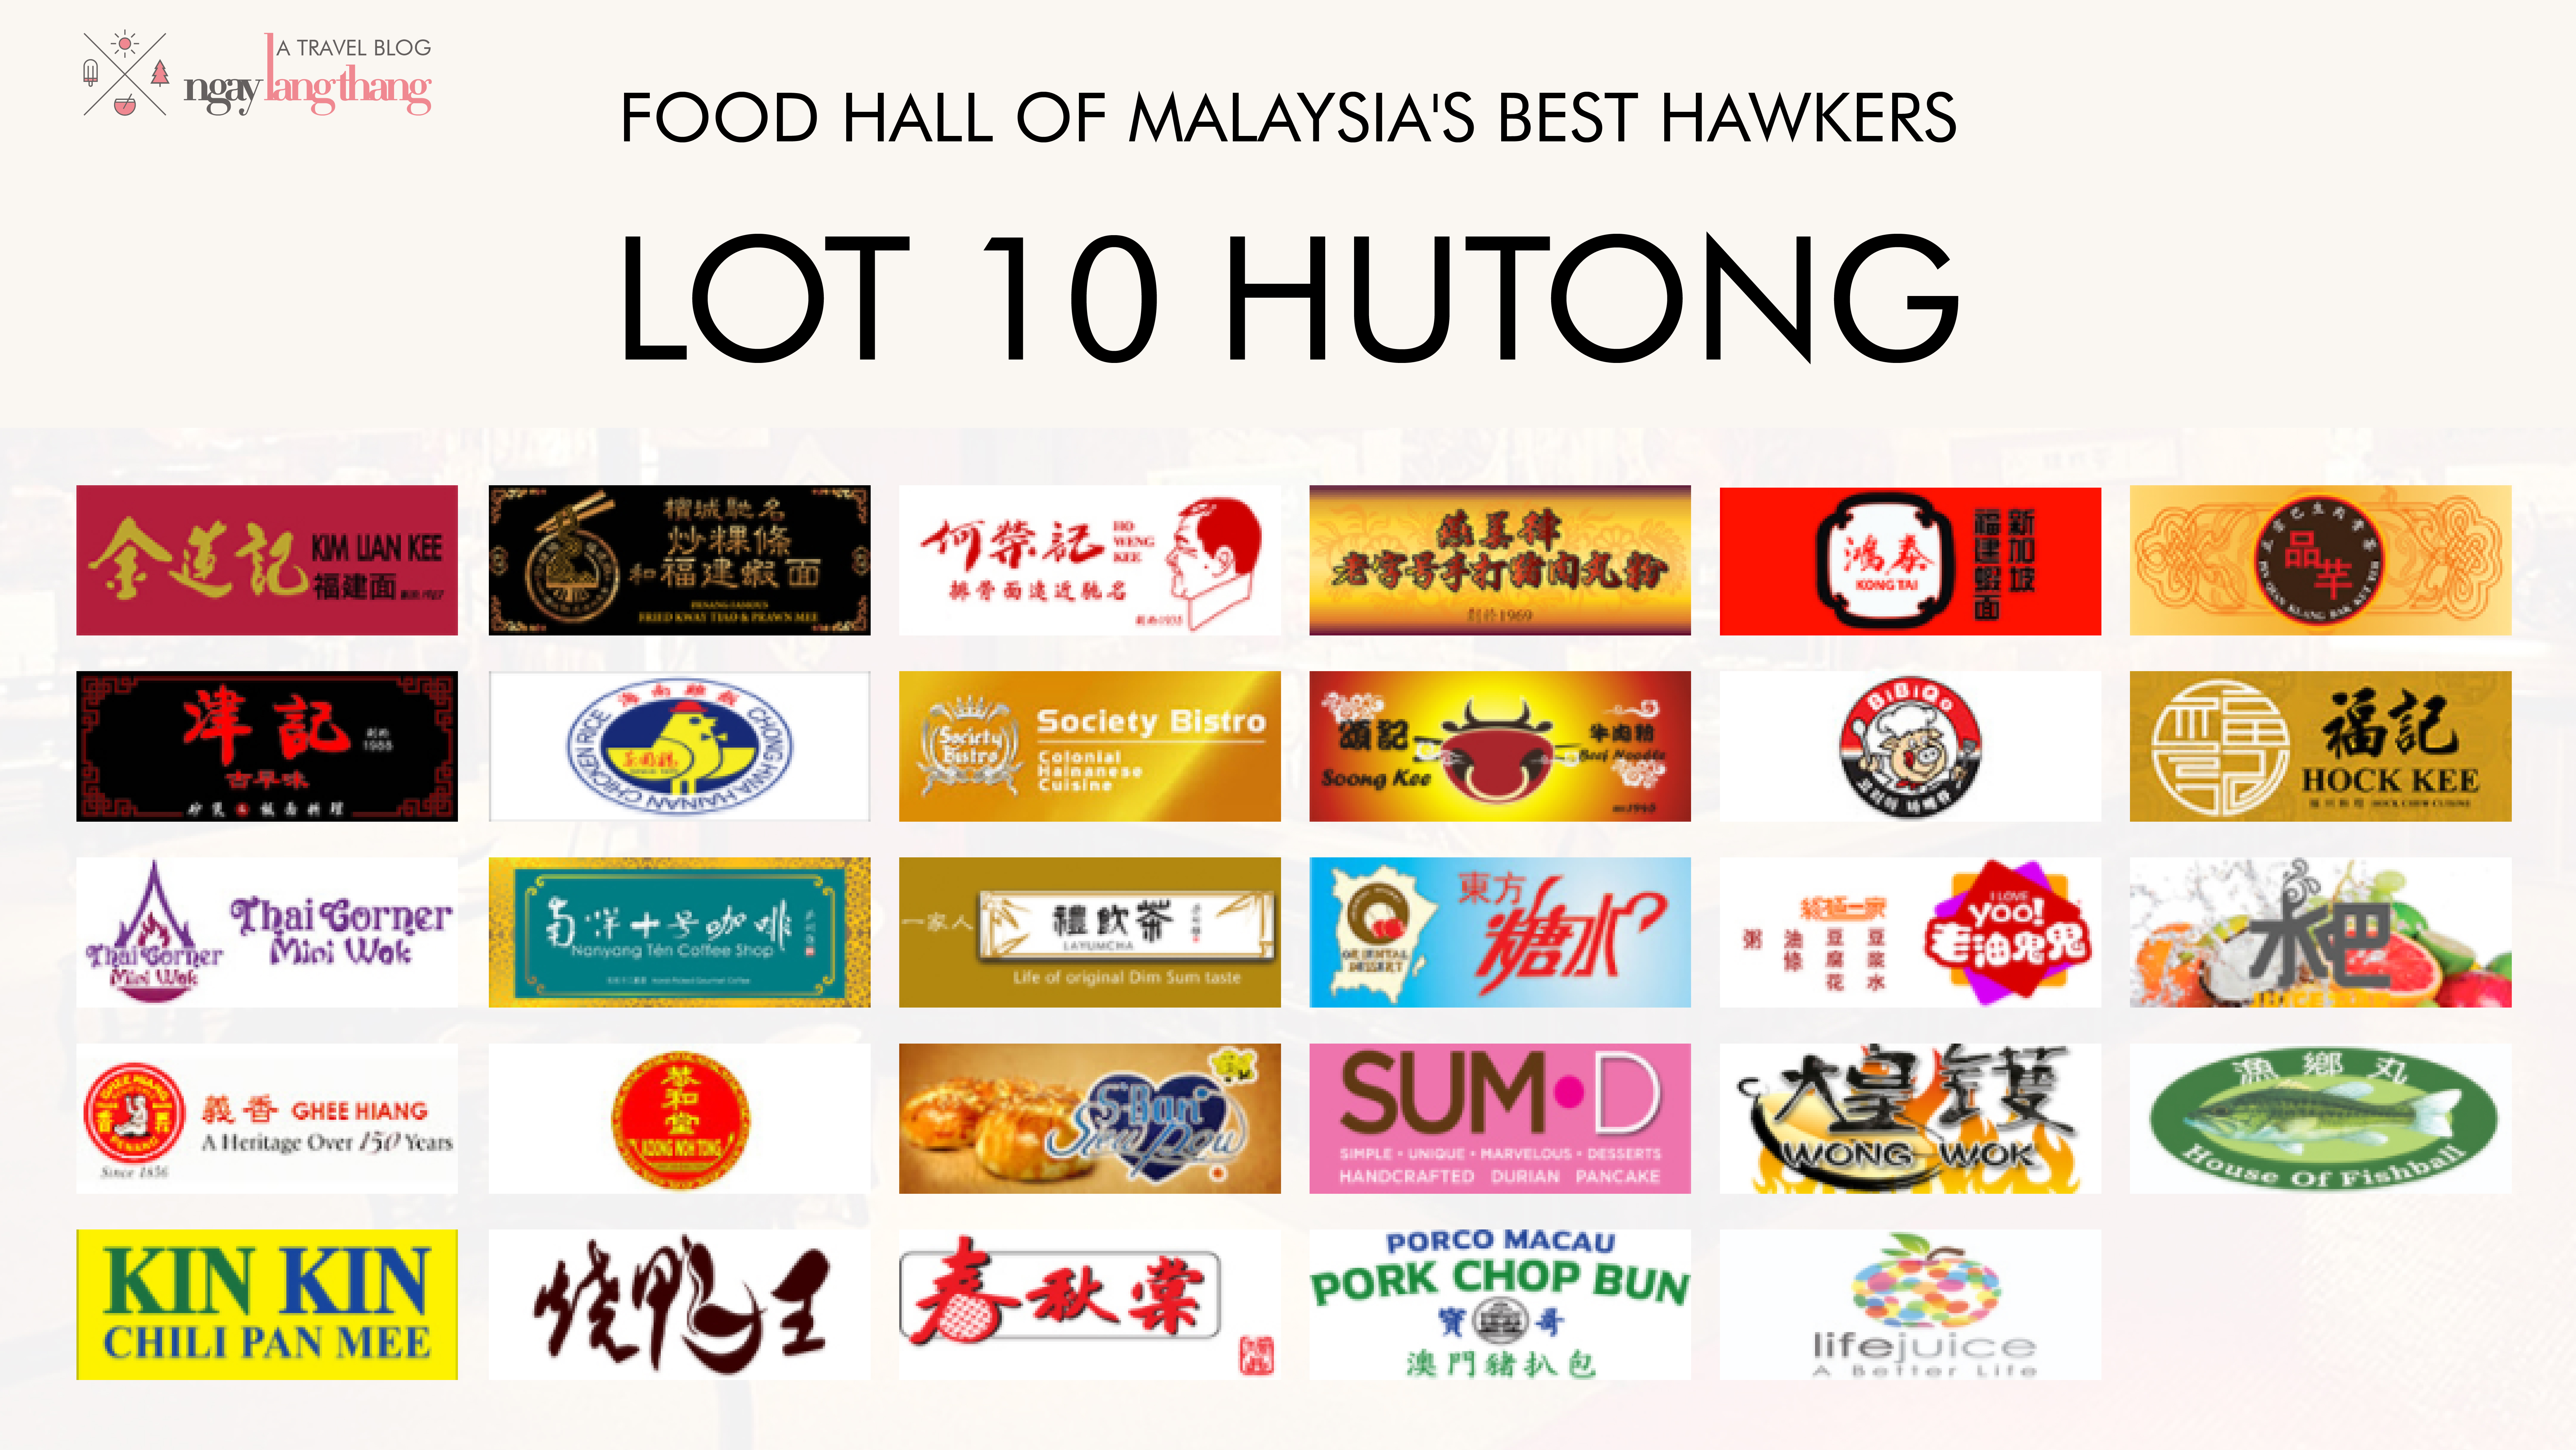 du lịch Kuala Lumpur-29 thương hiệu nổi tiếng trong Lot 10 Hutong